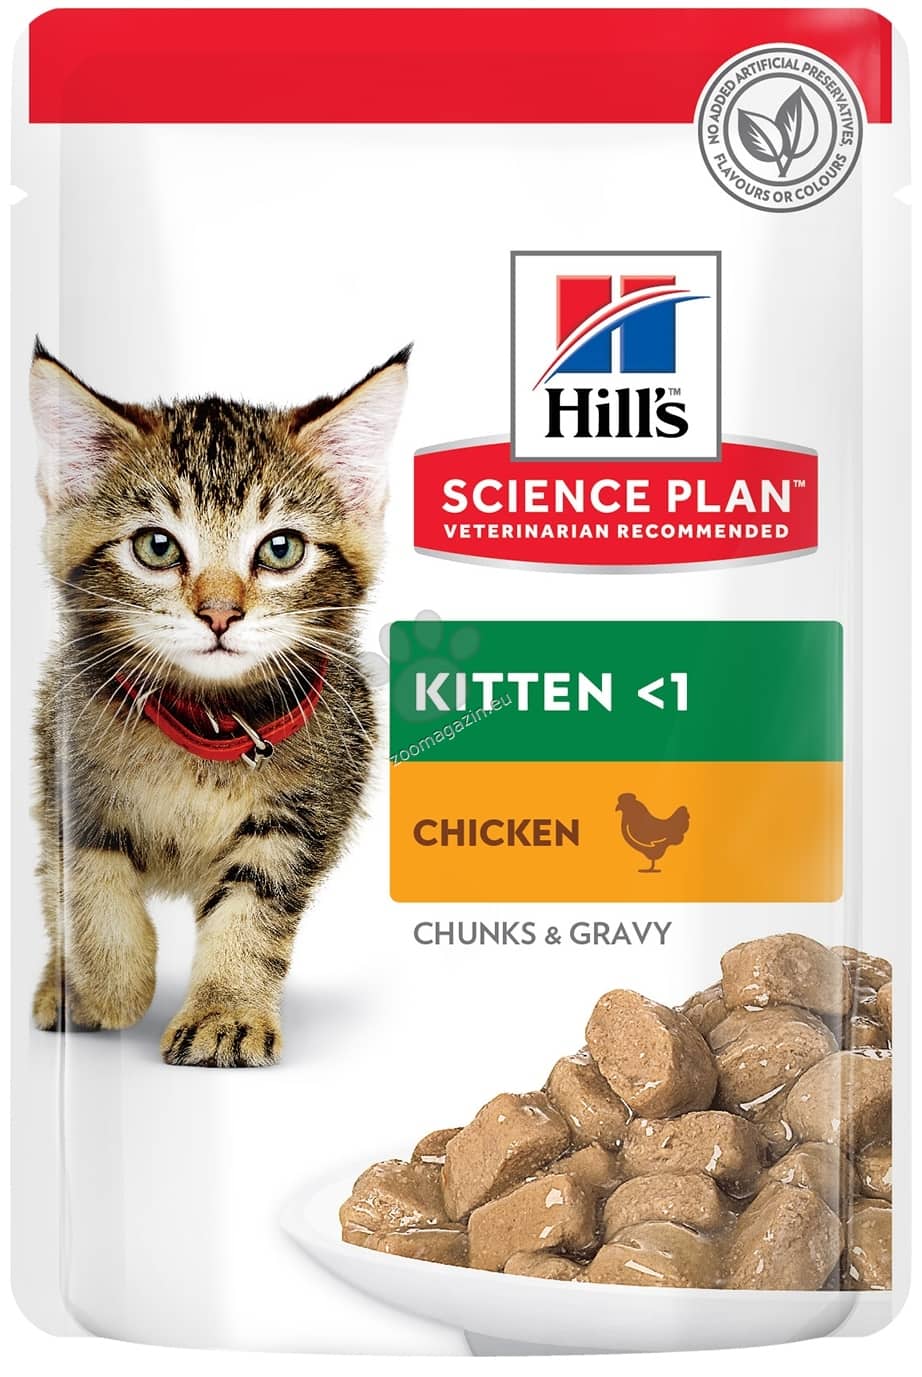 Hills Kitten Chicken Pouch